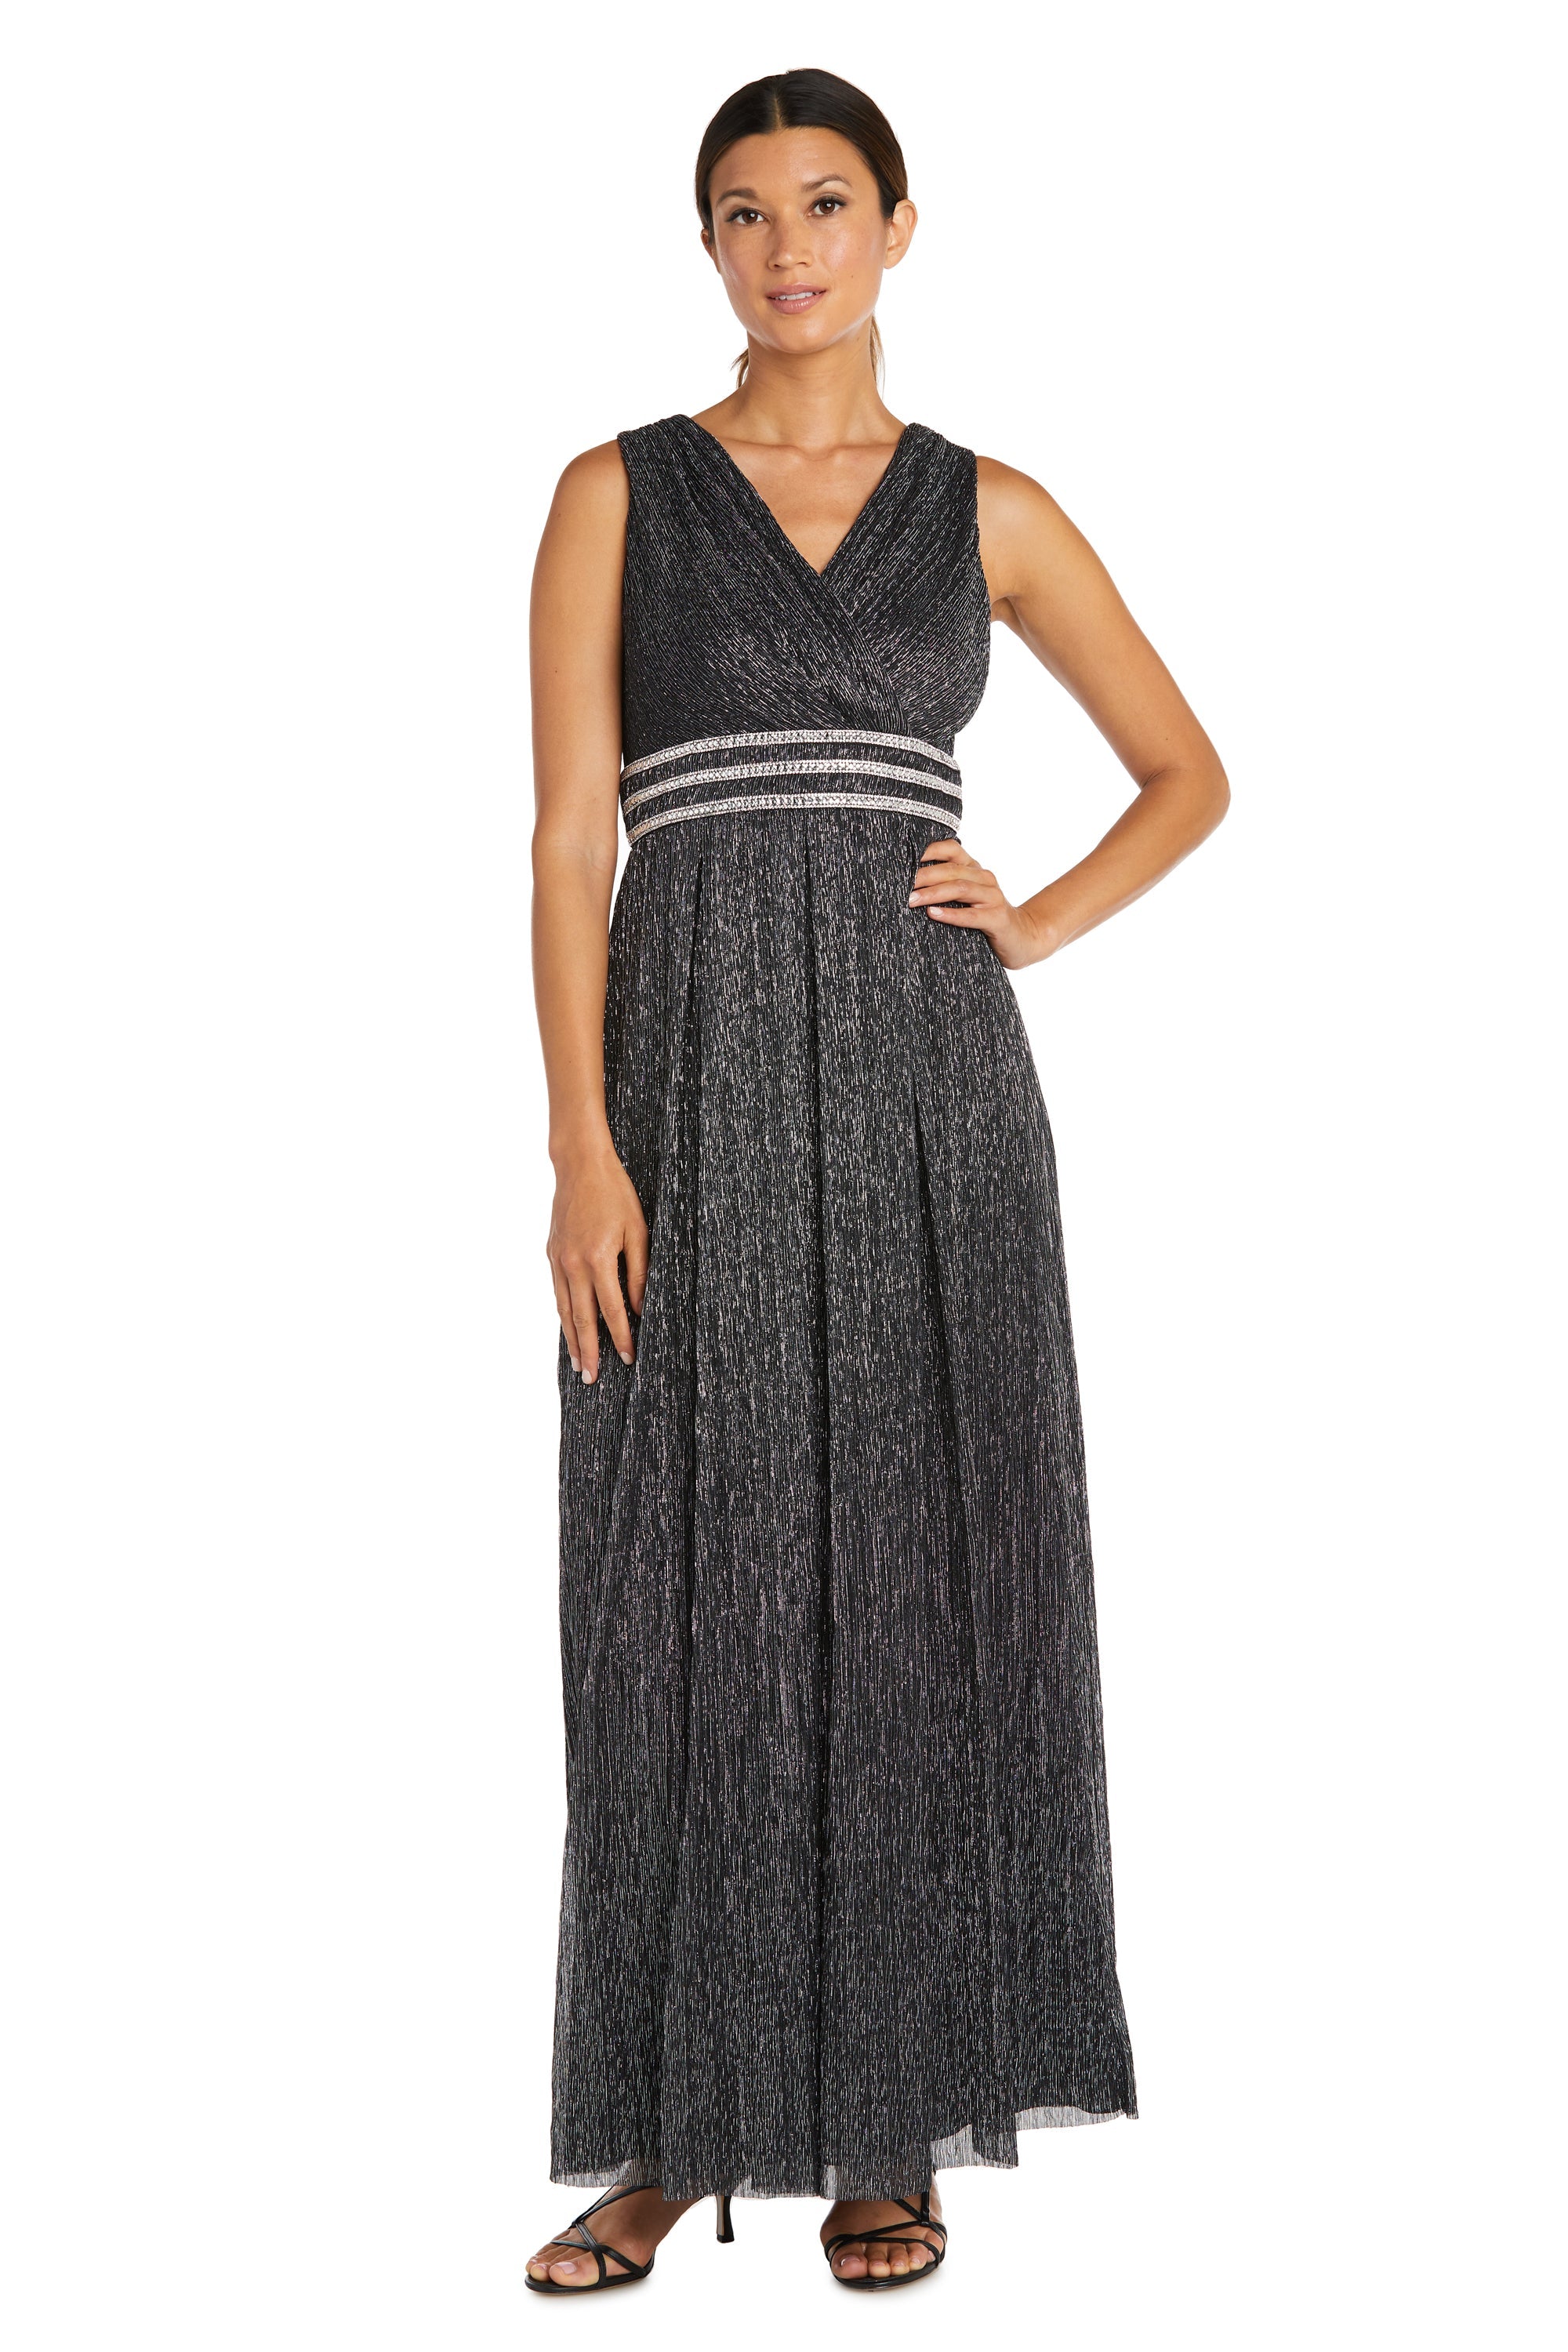 Light and elegant. | Fancy gowns, Pattern dress women, Long gown pattern